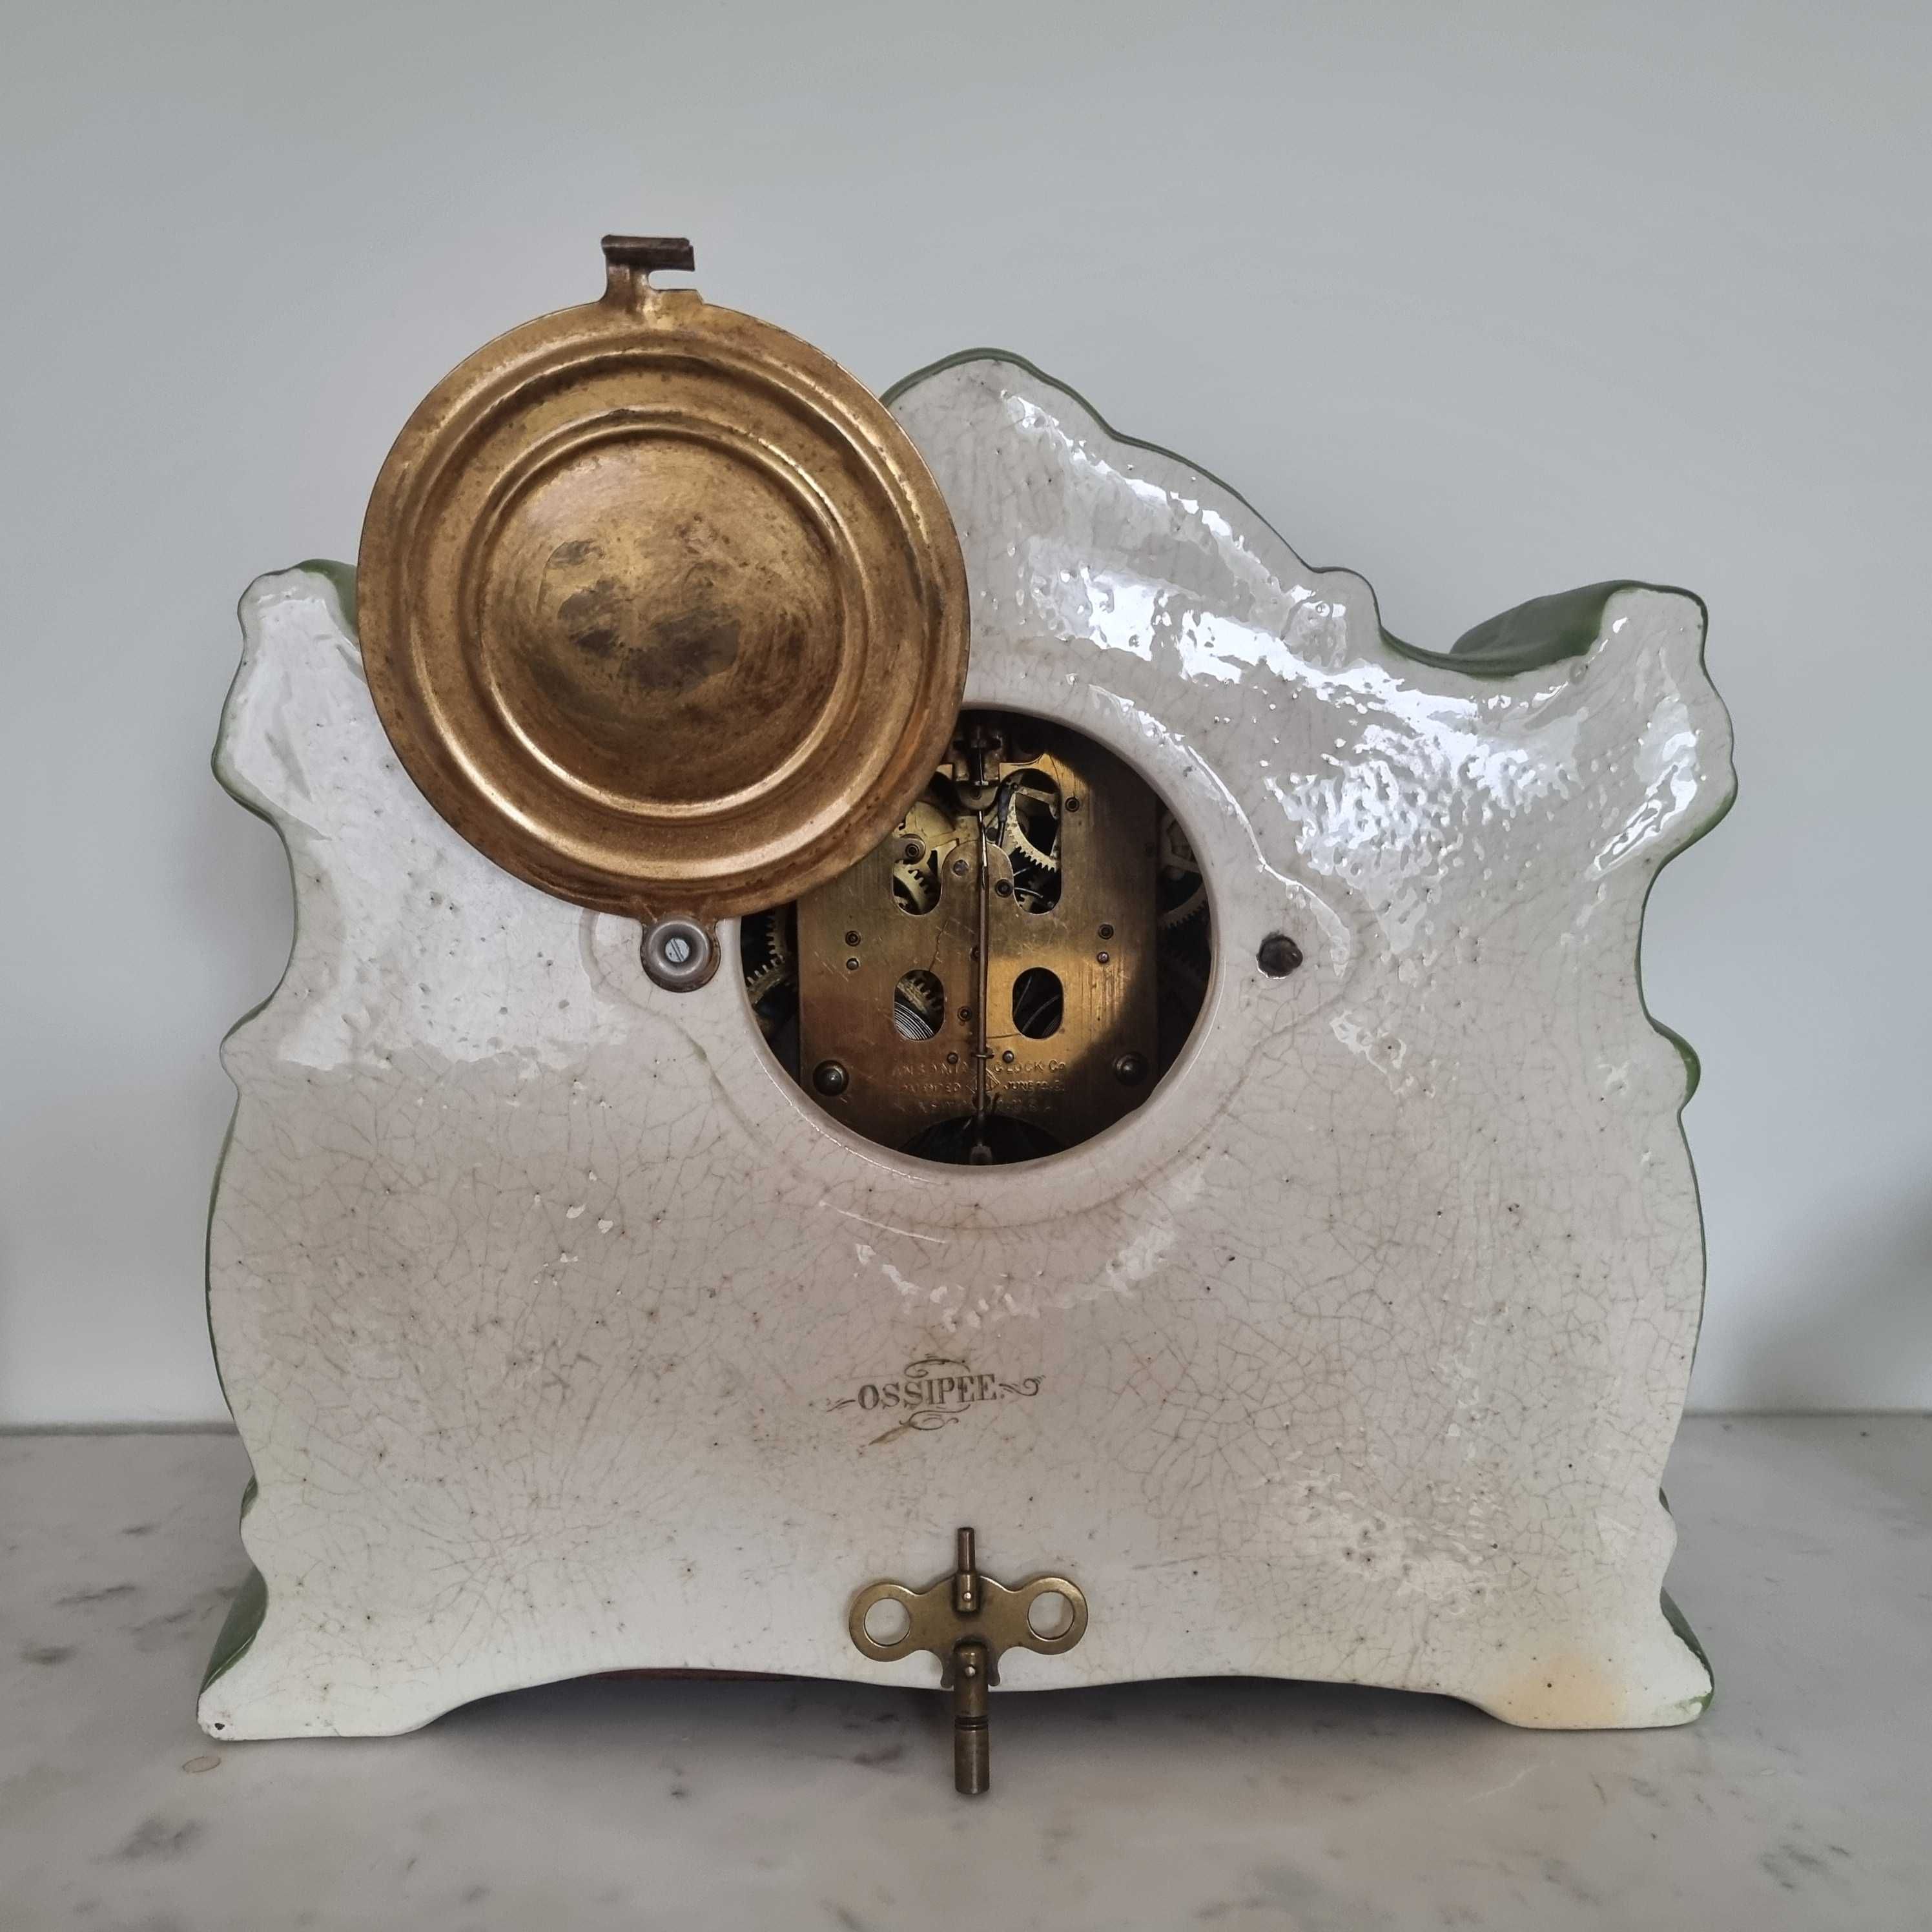 Zegar ceramiczny stojący z kurantem - XIX wiek, 100% oryginał.